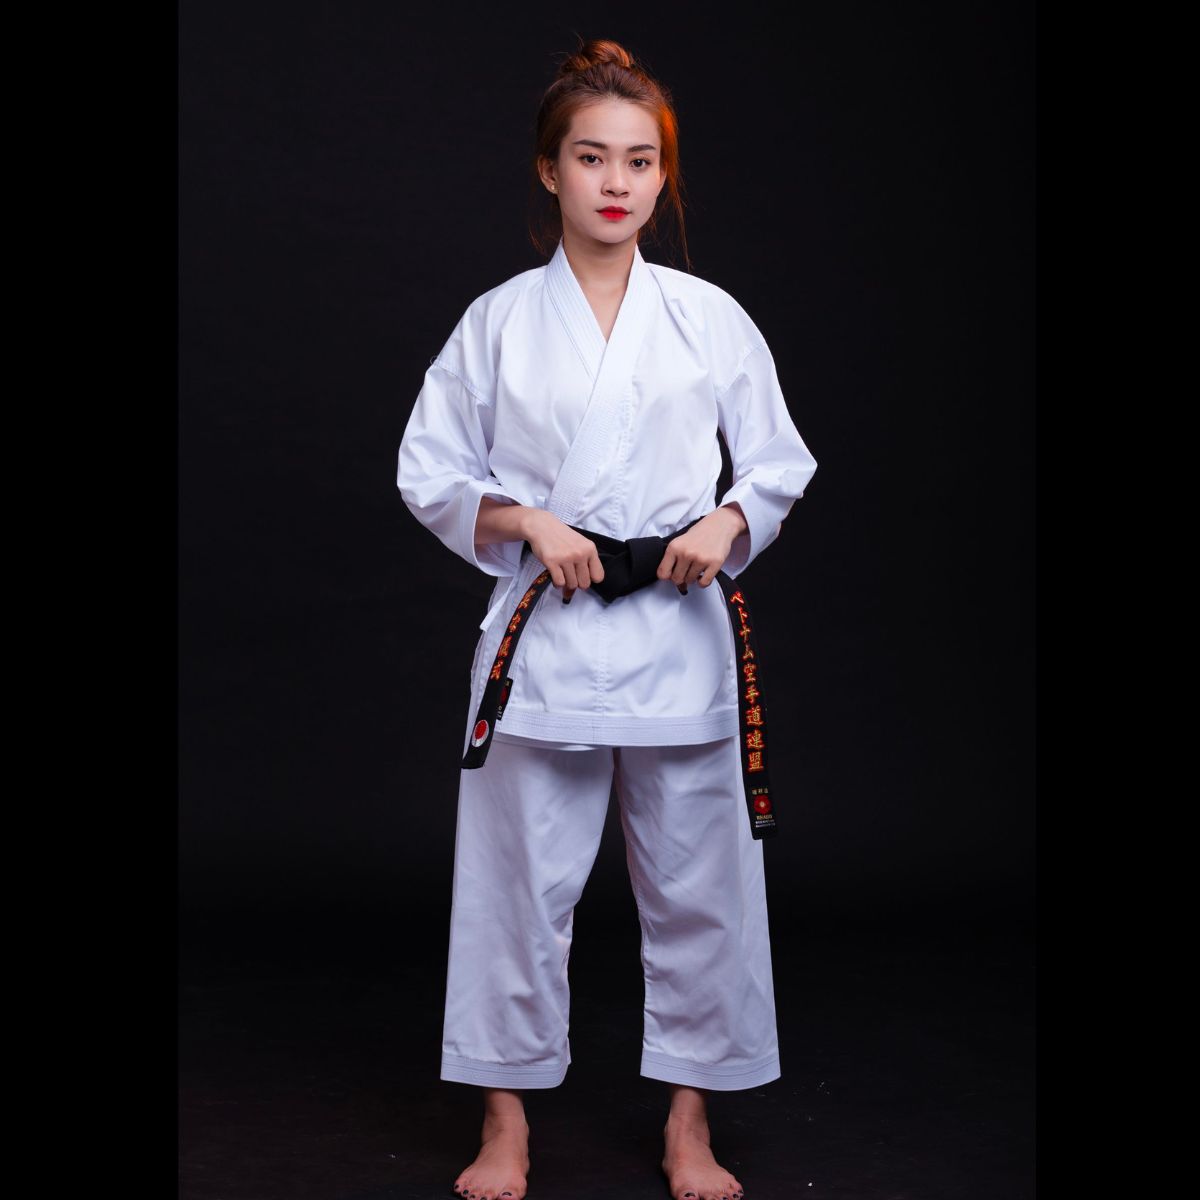 Võ phục karate là loại võ phục đặc biệt được thiết kế cho môn karate